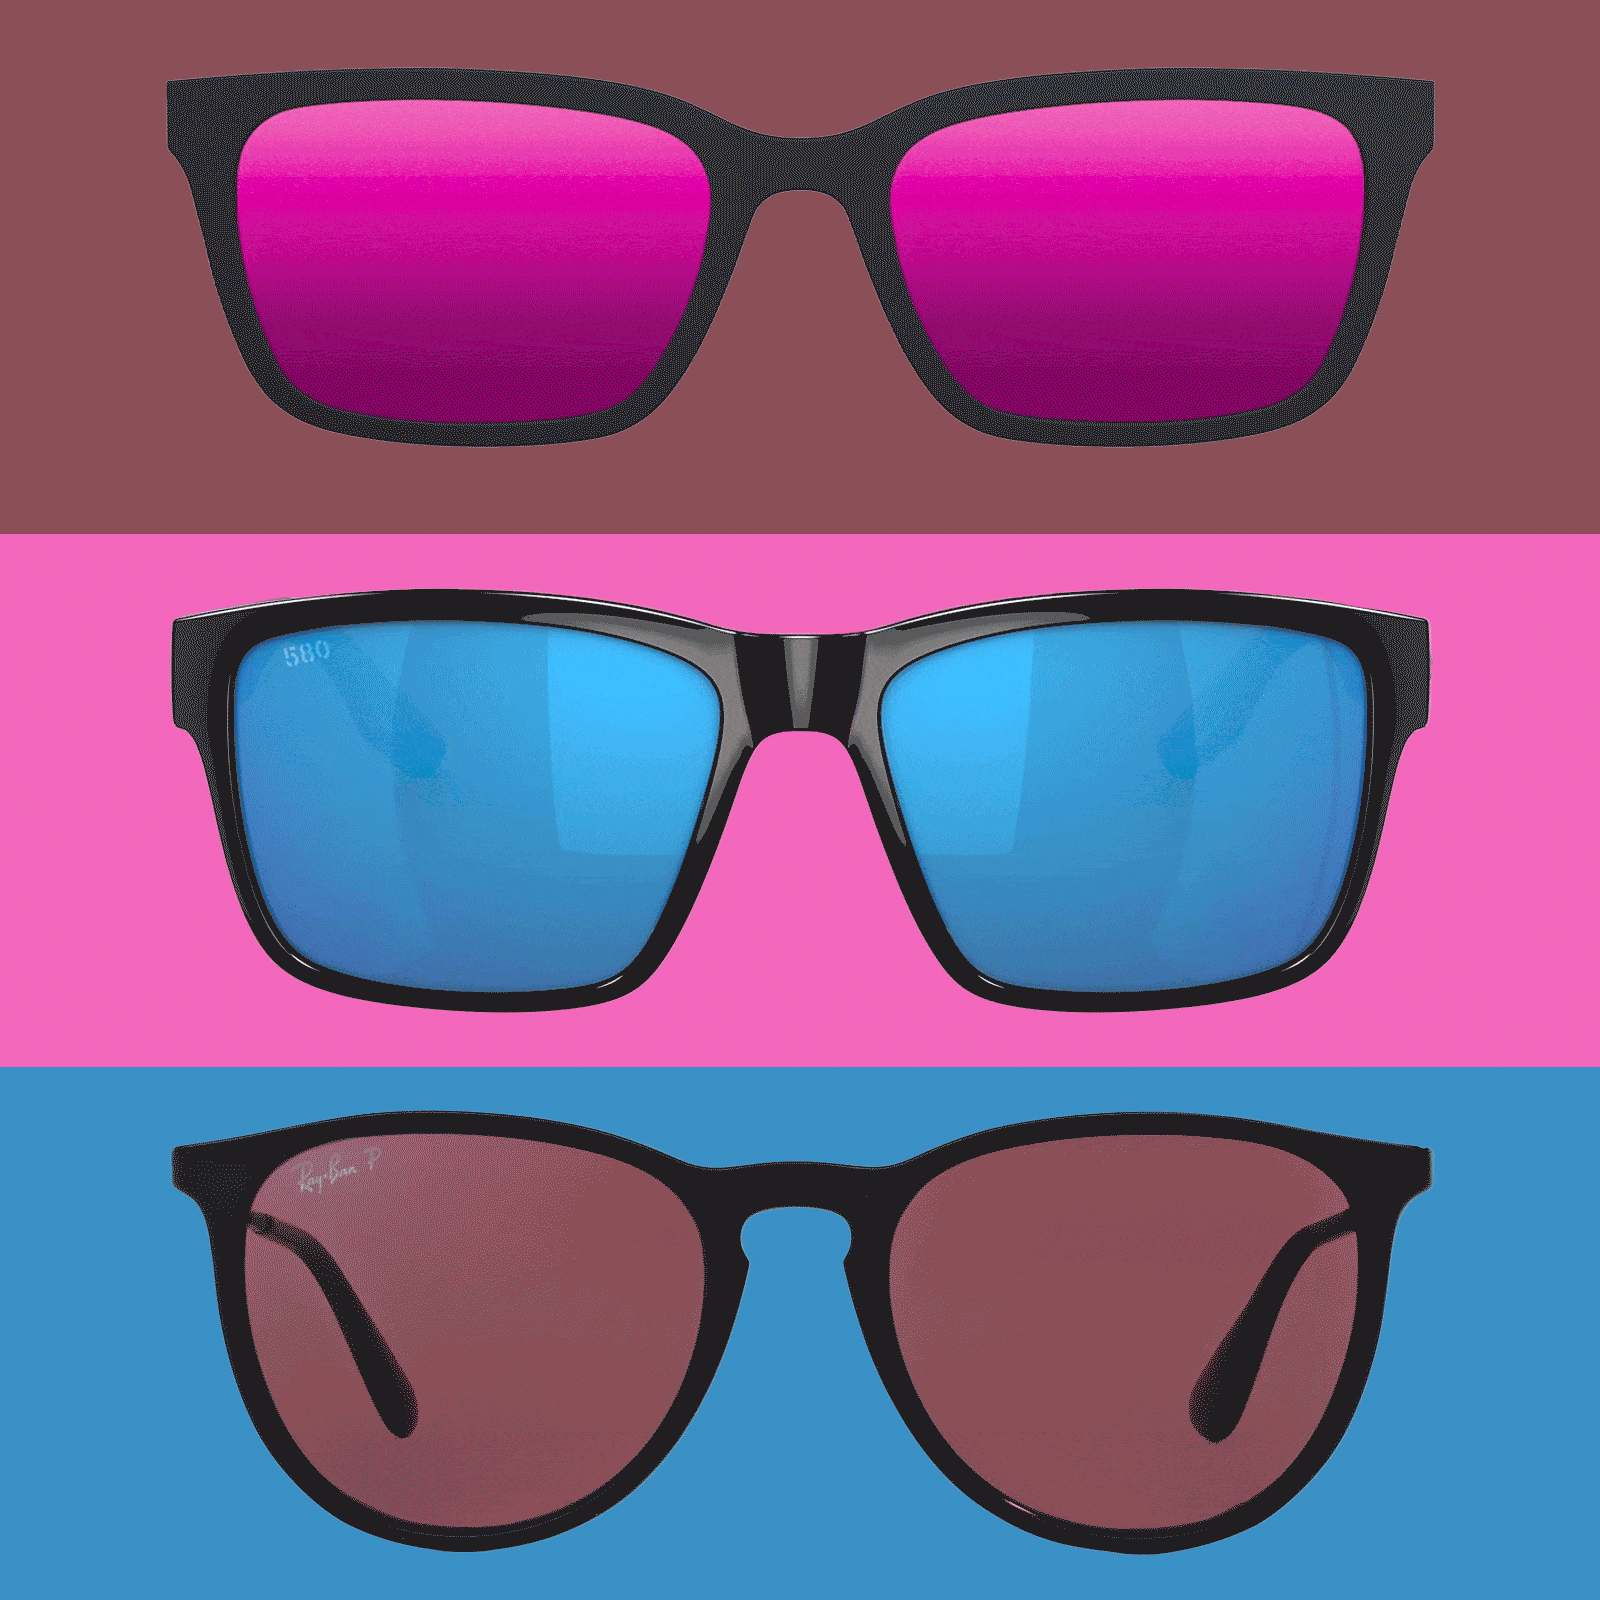 3 pairs of Polarized Sunglasses shining